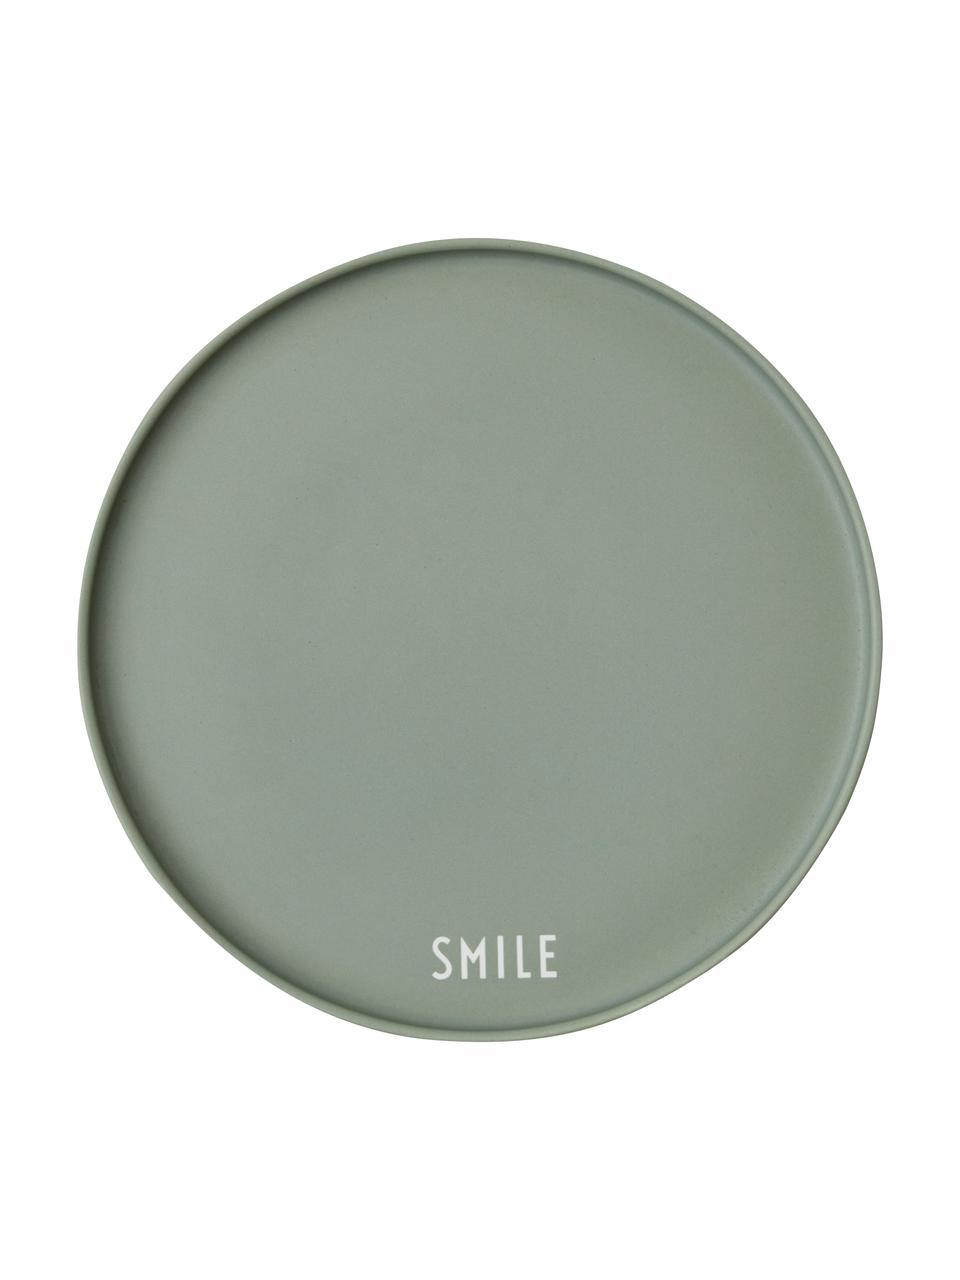 Design Teller Favourite SMILE in Grün mit Schriftzug, Fine Bone China (Porzellan)
Fine Bone China ist ein Weichporzellan, das sich besonders durch seinen strahlenden, durchscheinenden Glanz auszeichnet., Grün, Weiss, Ø 22 cm